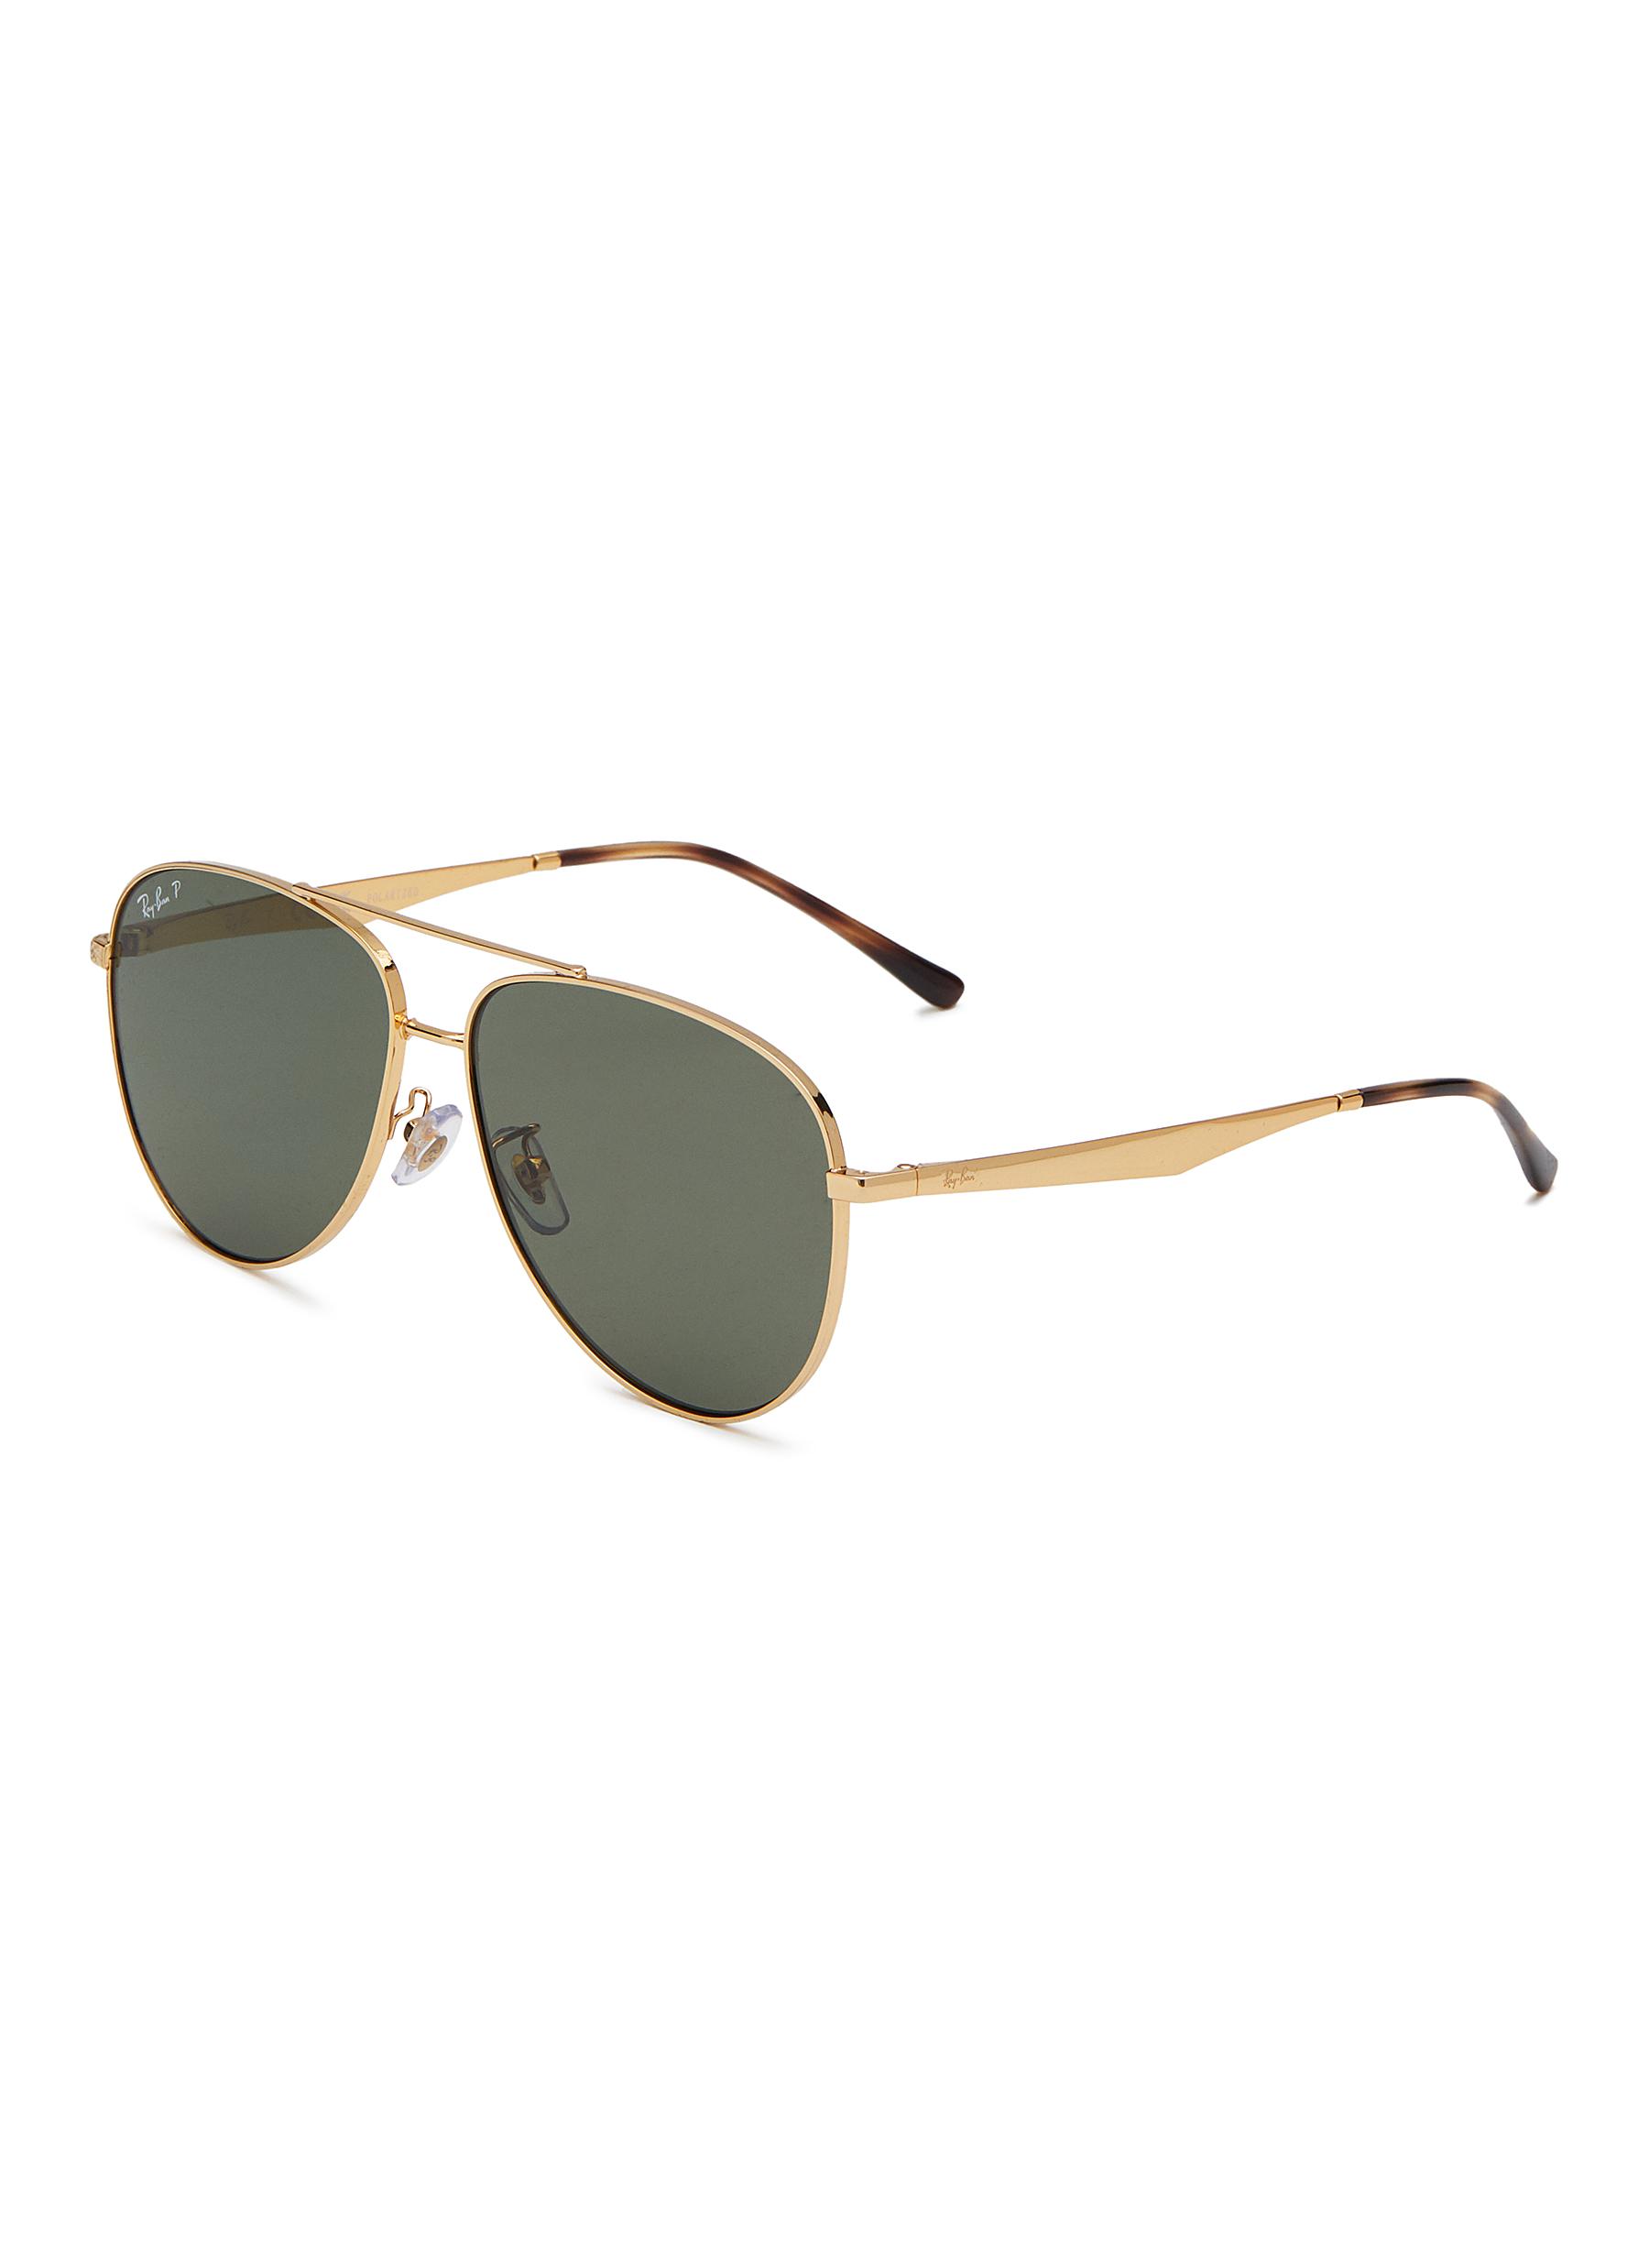 Hrinkar Stylish Pilot Full-Frame Metal Polarized Sunglasses for